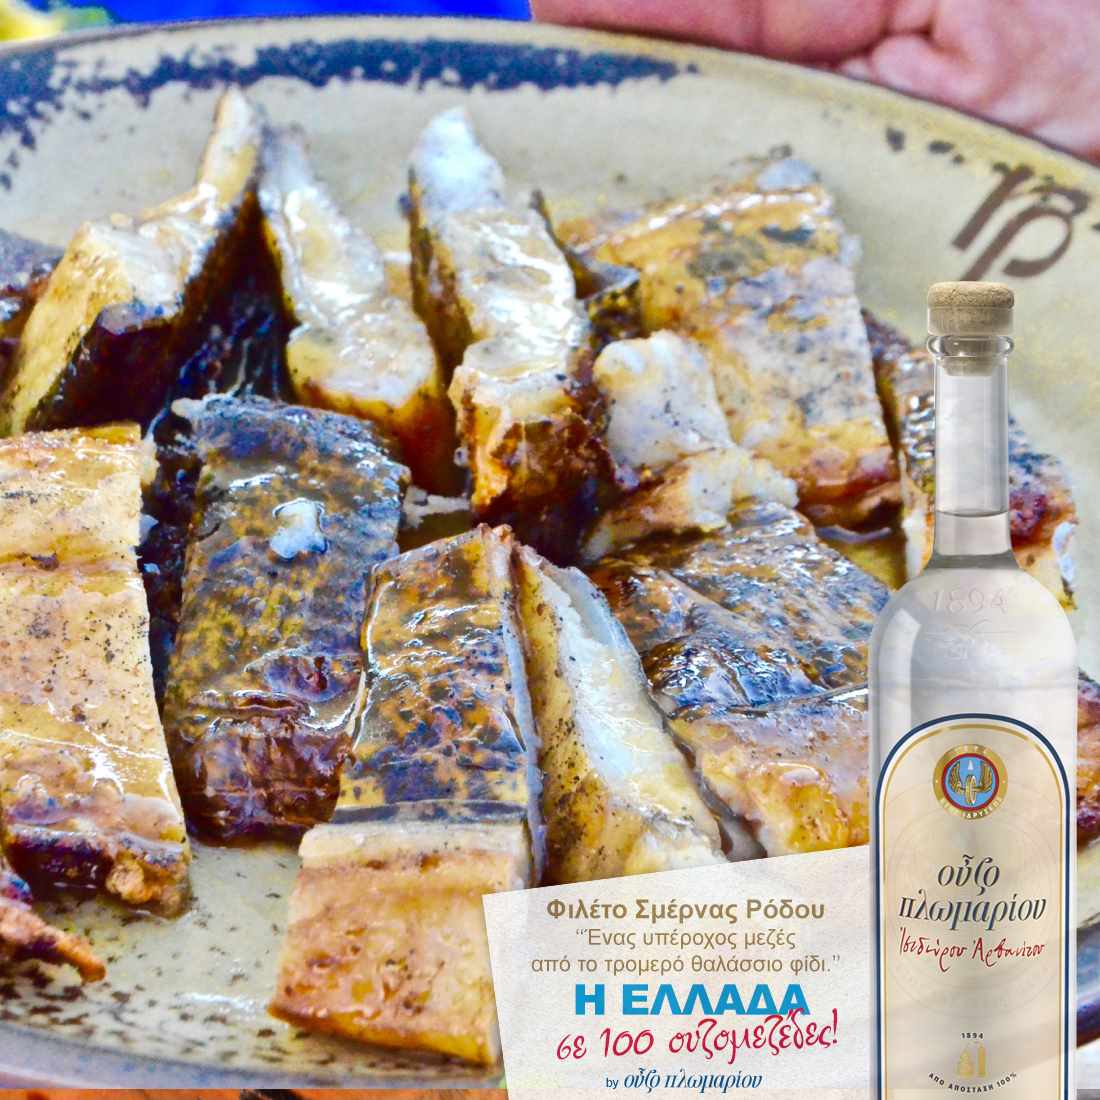 Φιλέτο σμέρνας - Ουζομεζέδες - Greek Gastronomy Guide